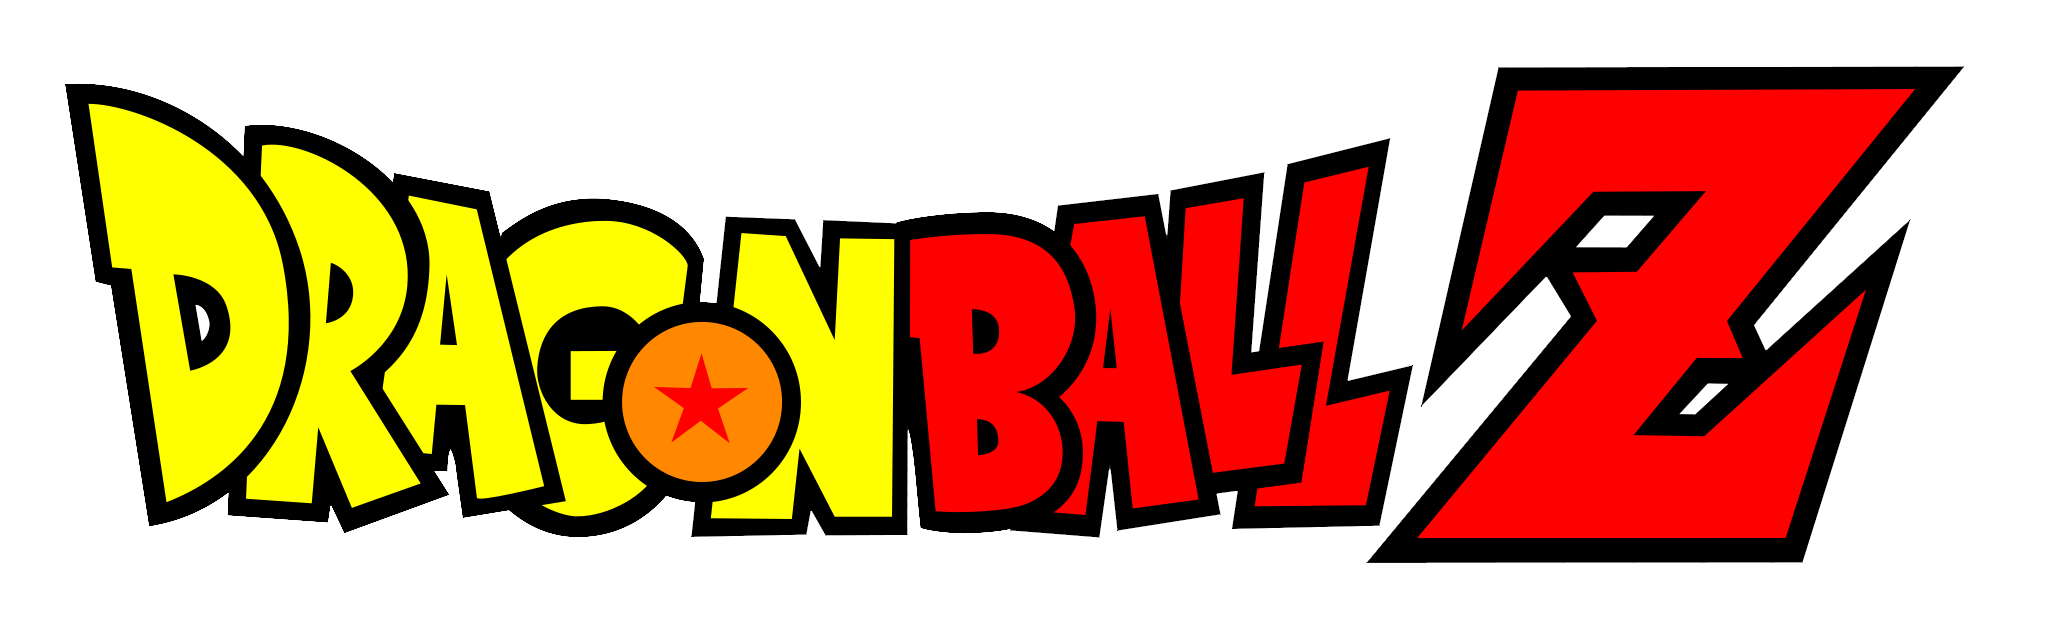 Dragon Bal Logo - Dragon Ball Z Logo 2 image - Mod DB